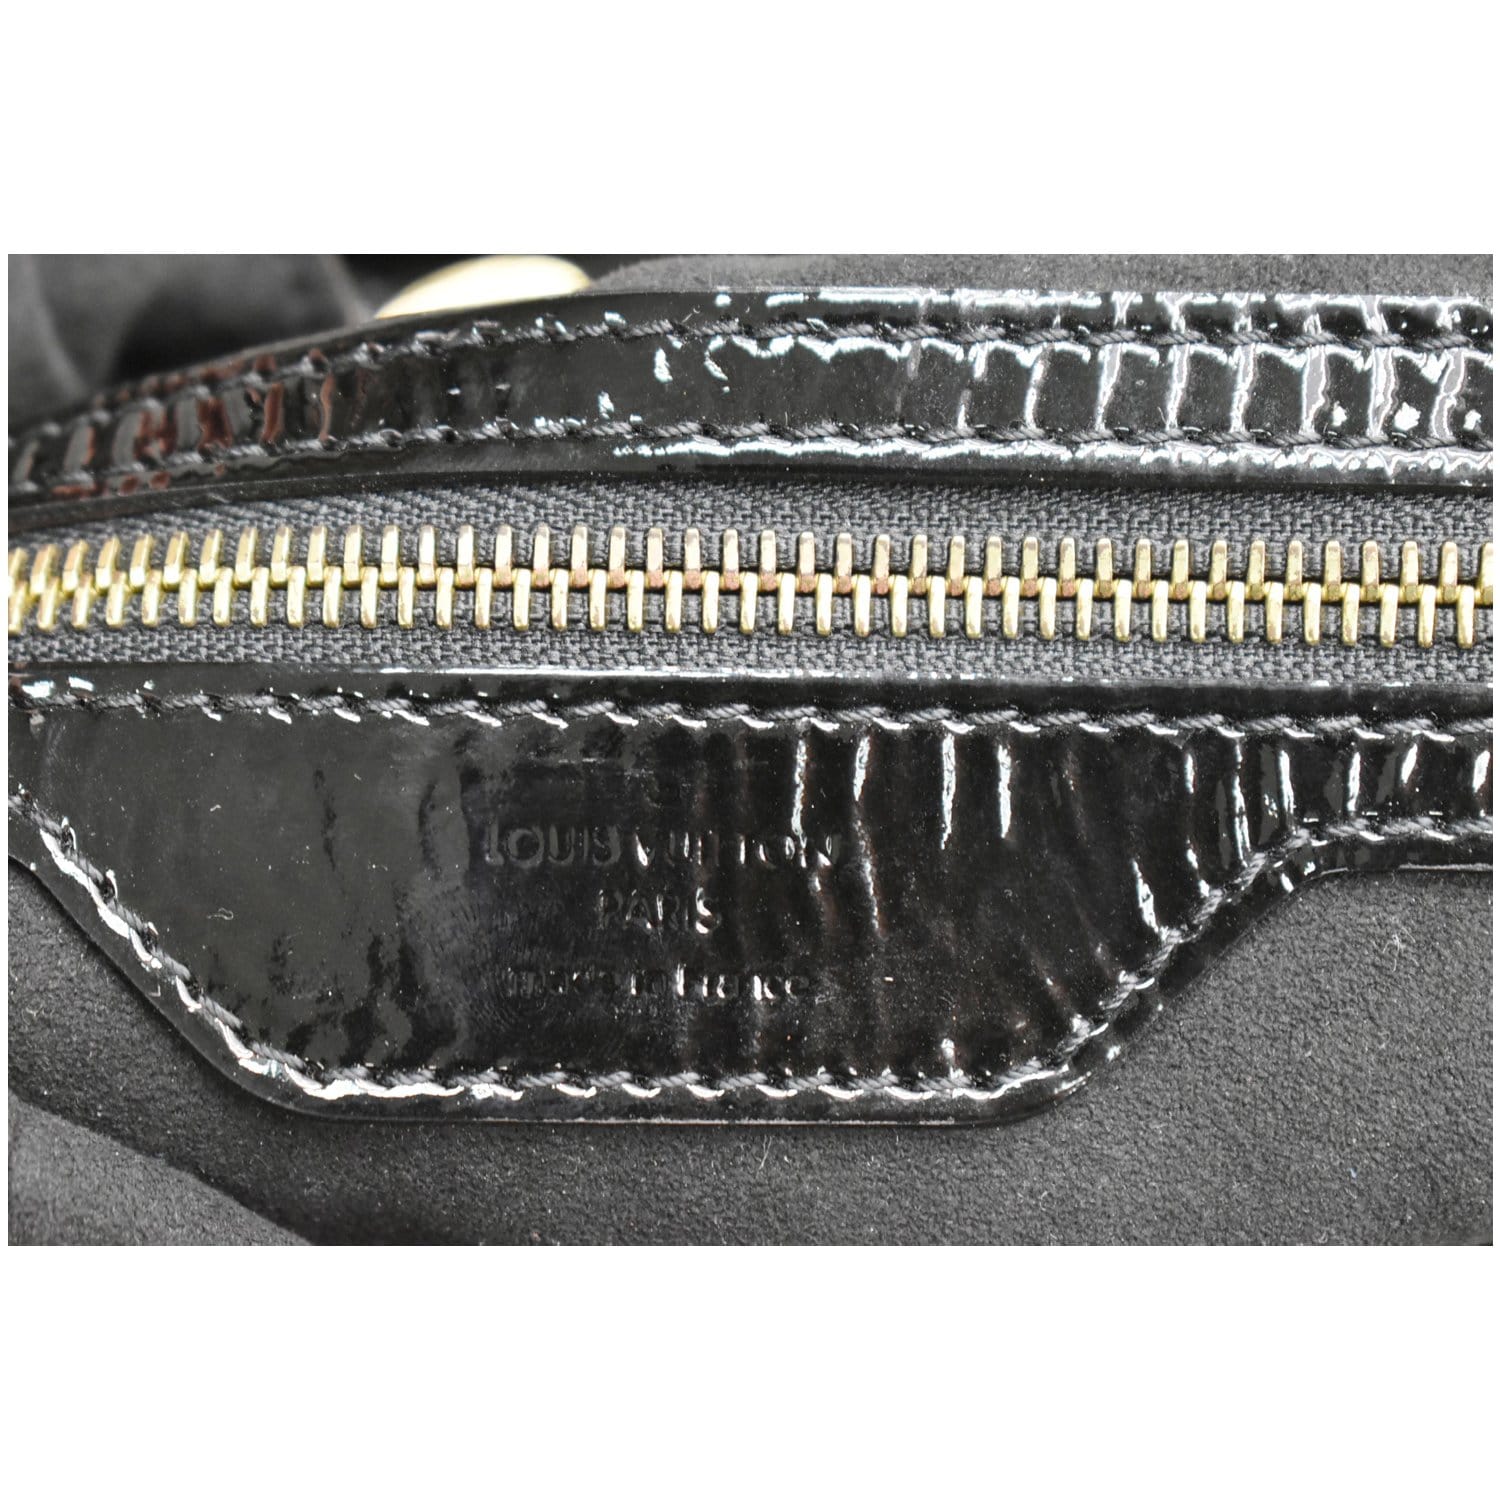 Surya L Shoulder bag in Patent Leather, Gold Hardware